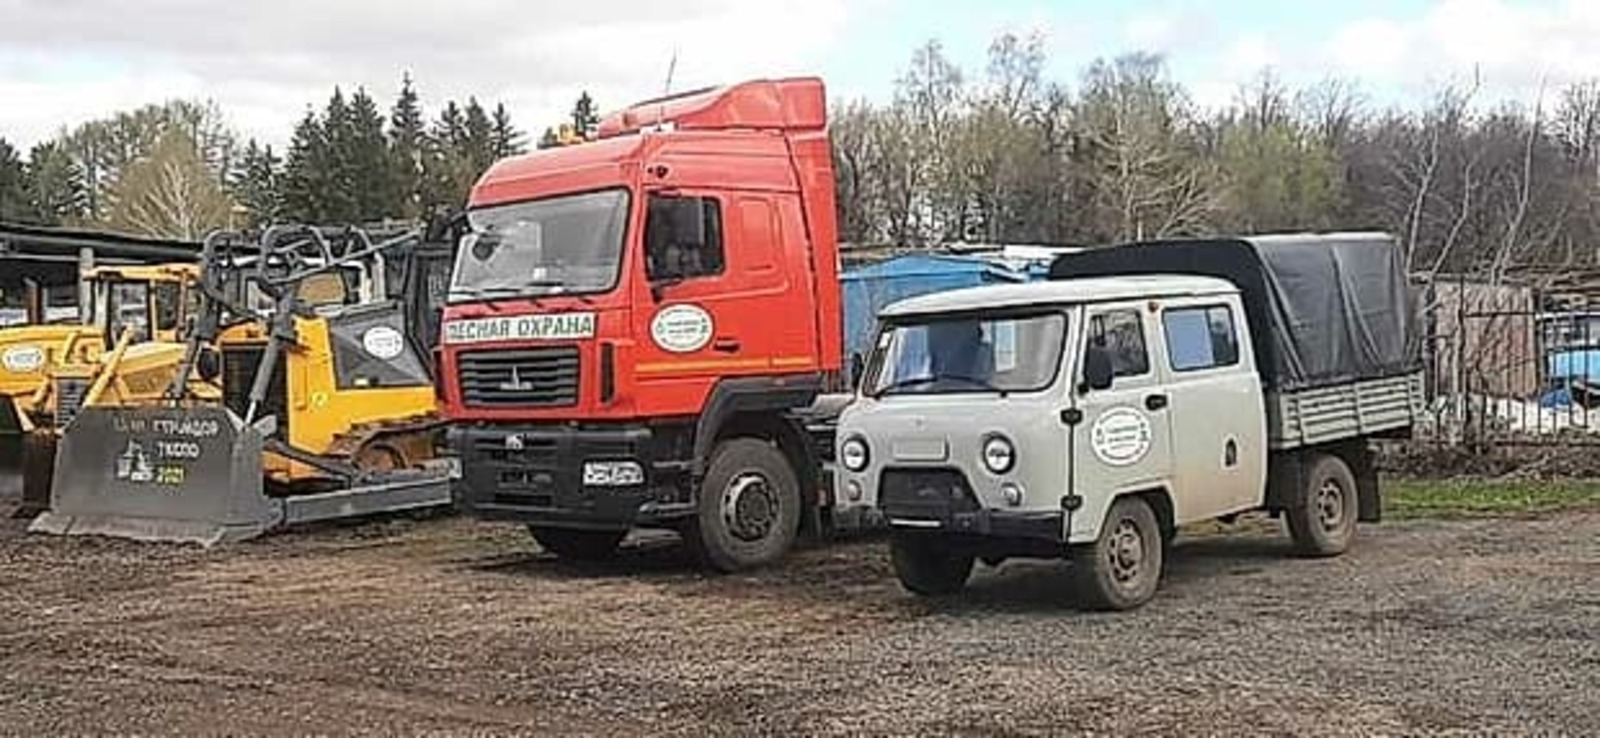 Республика Башкортостан получила еще 4 единицы лесопожарной техники